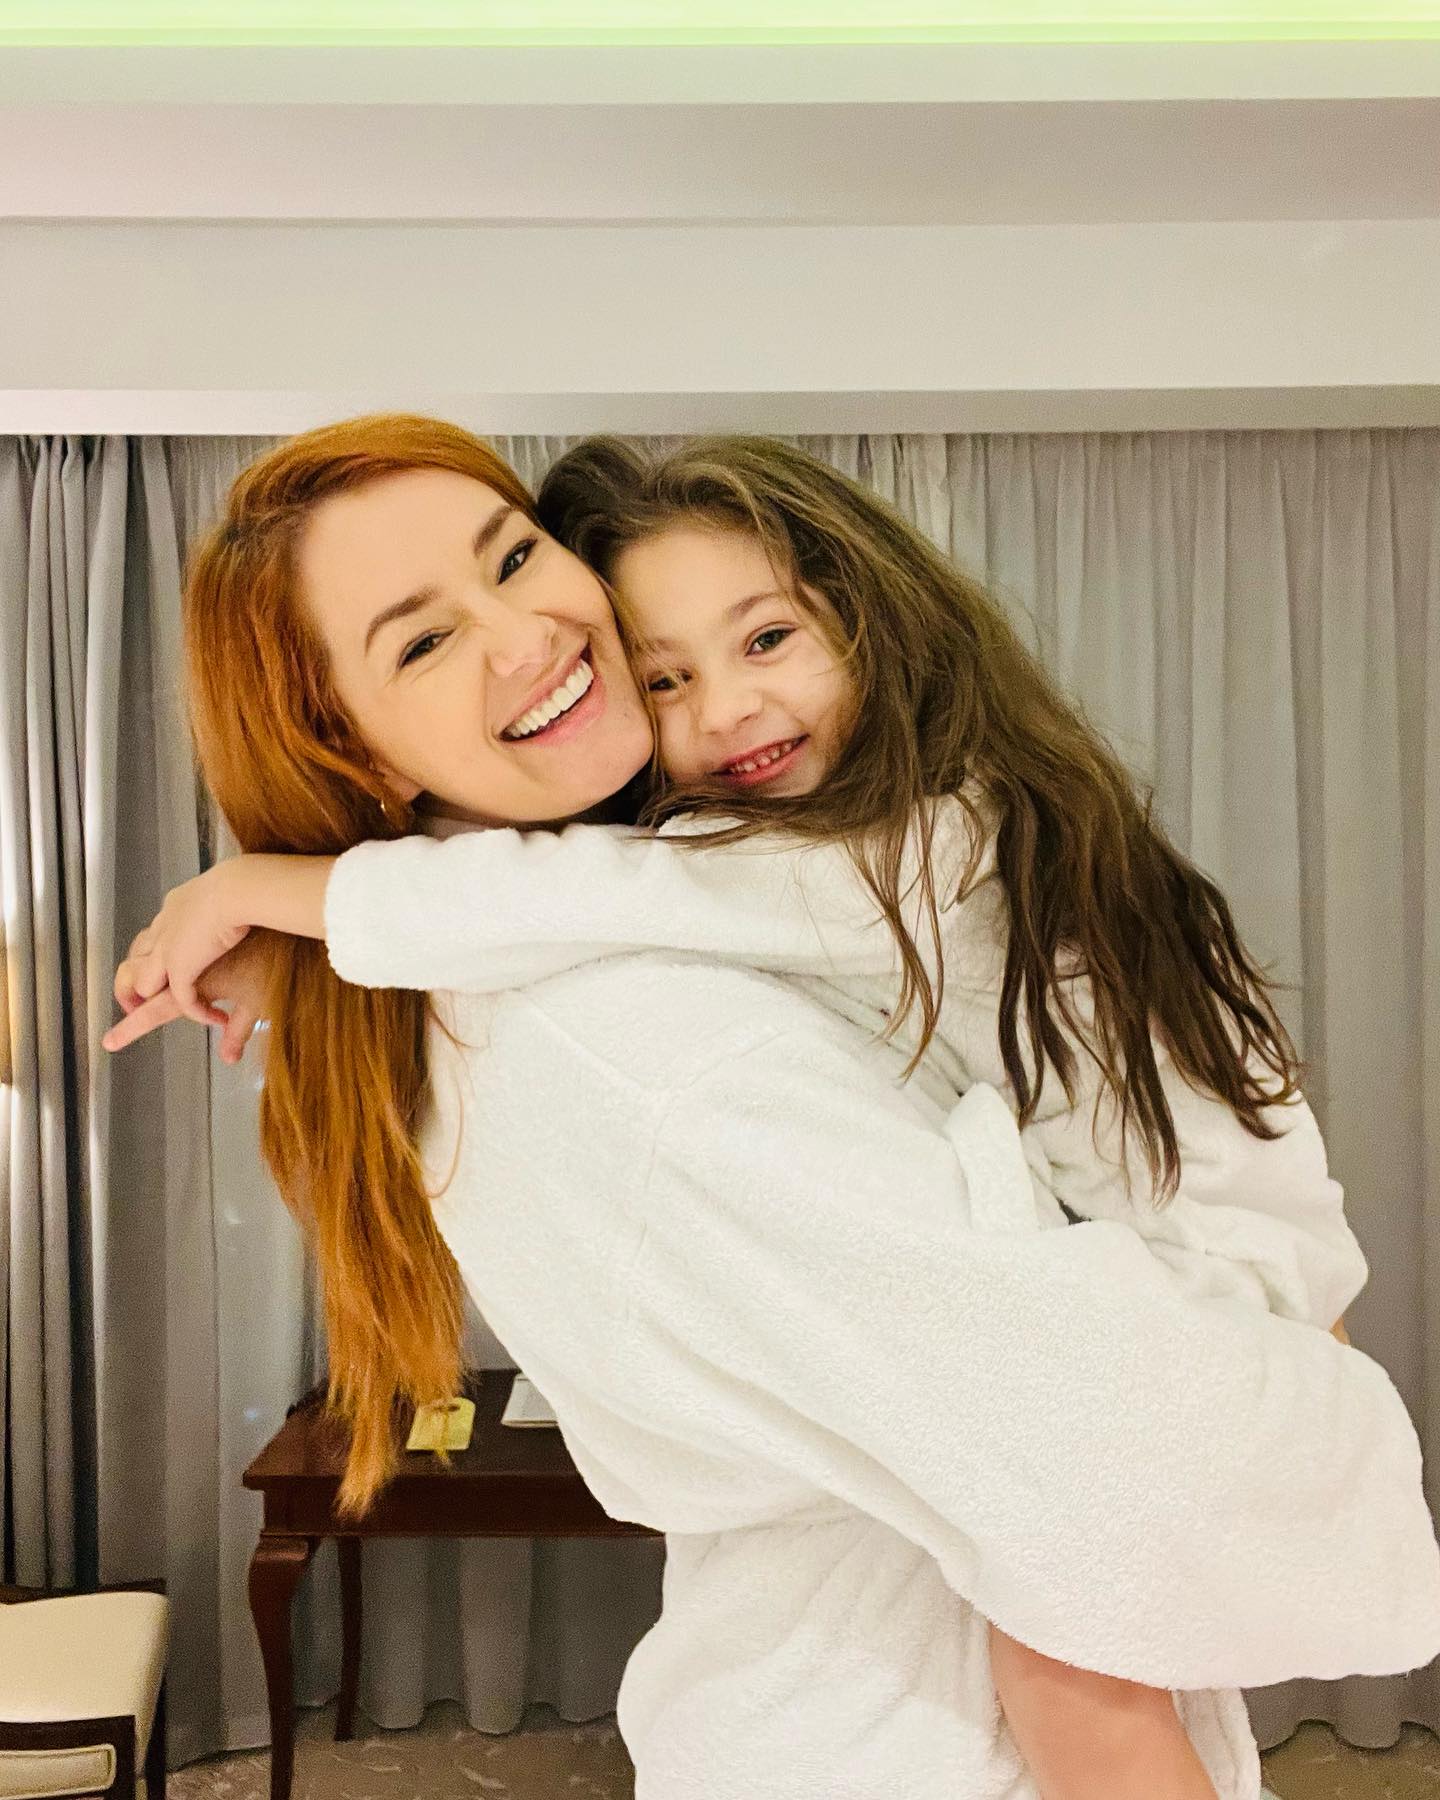 Feli Donose îmbrățișându-și fiica în camera de hotel, în timp ce amândouă erau îmbrăcate în halate albe